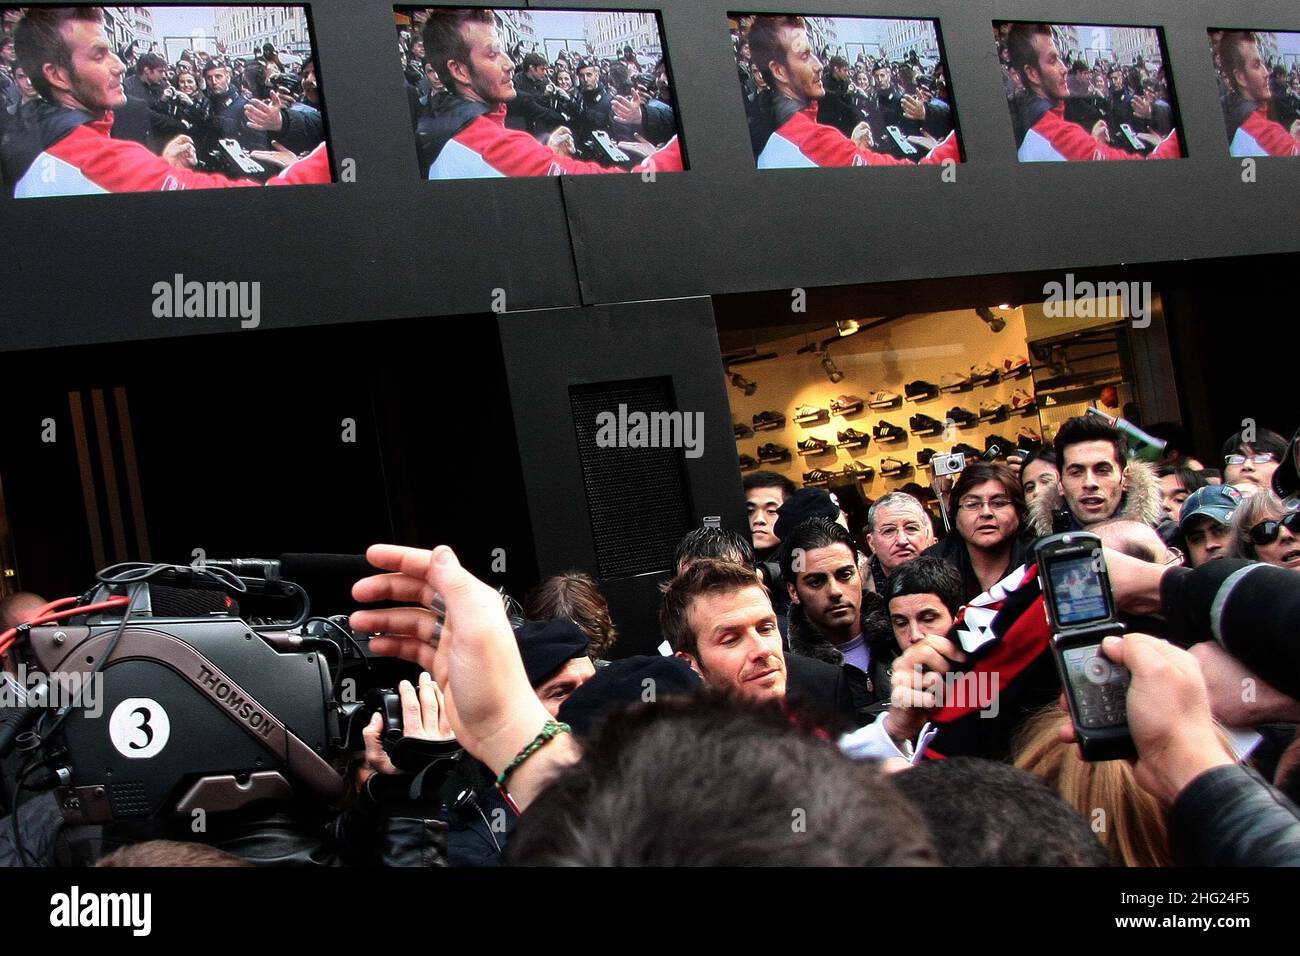 David Beckham al negozio Adidas di Milano per presentare il nuovo Predator  Powerswerve Foto stock - Alamy